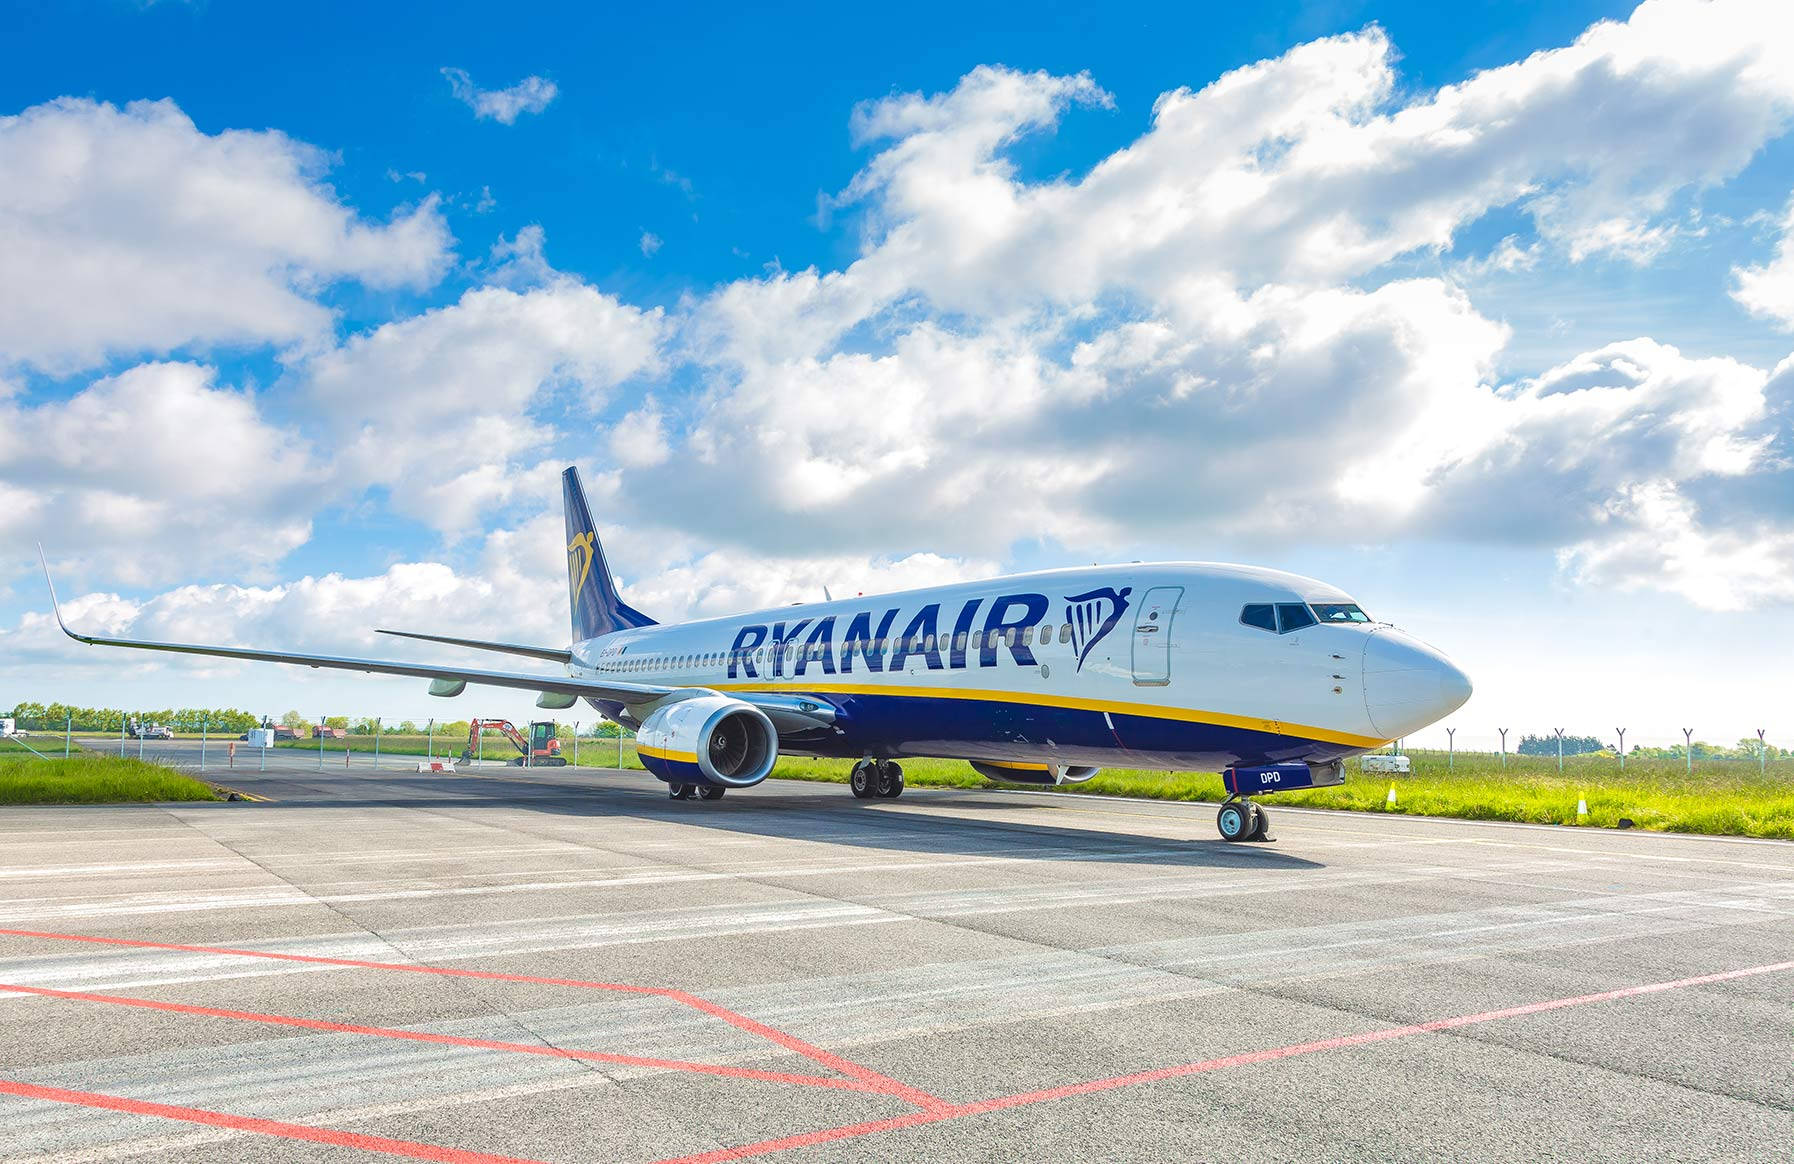 Ryanairflugzeug Auf Startbahn Unter Dem Himmel Wallpaper